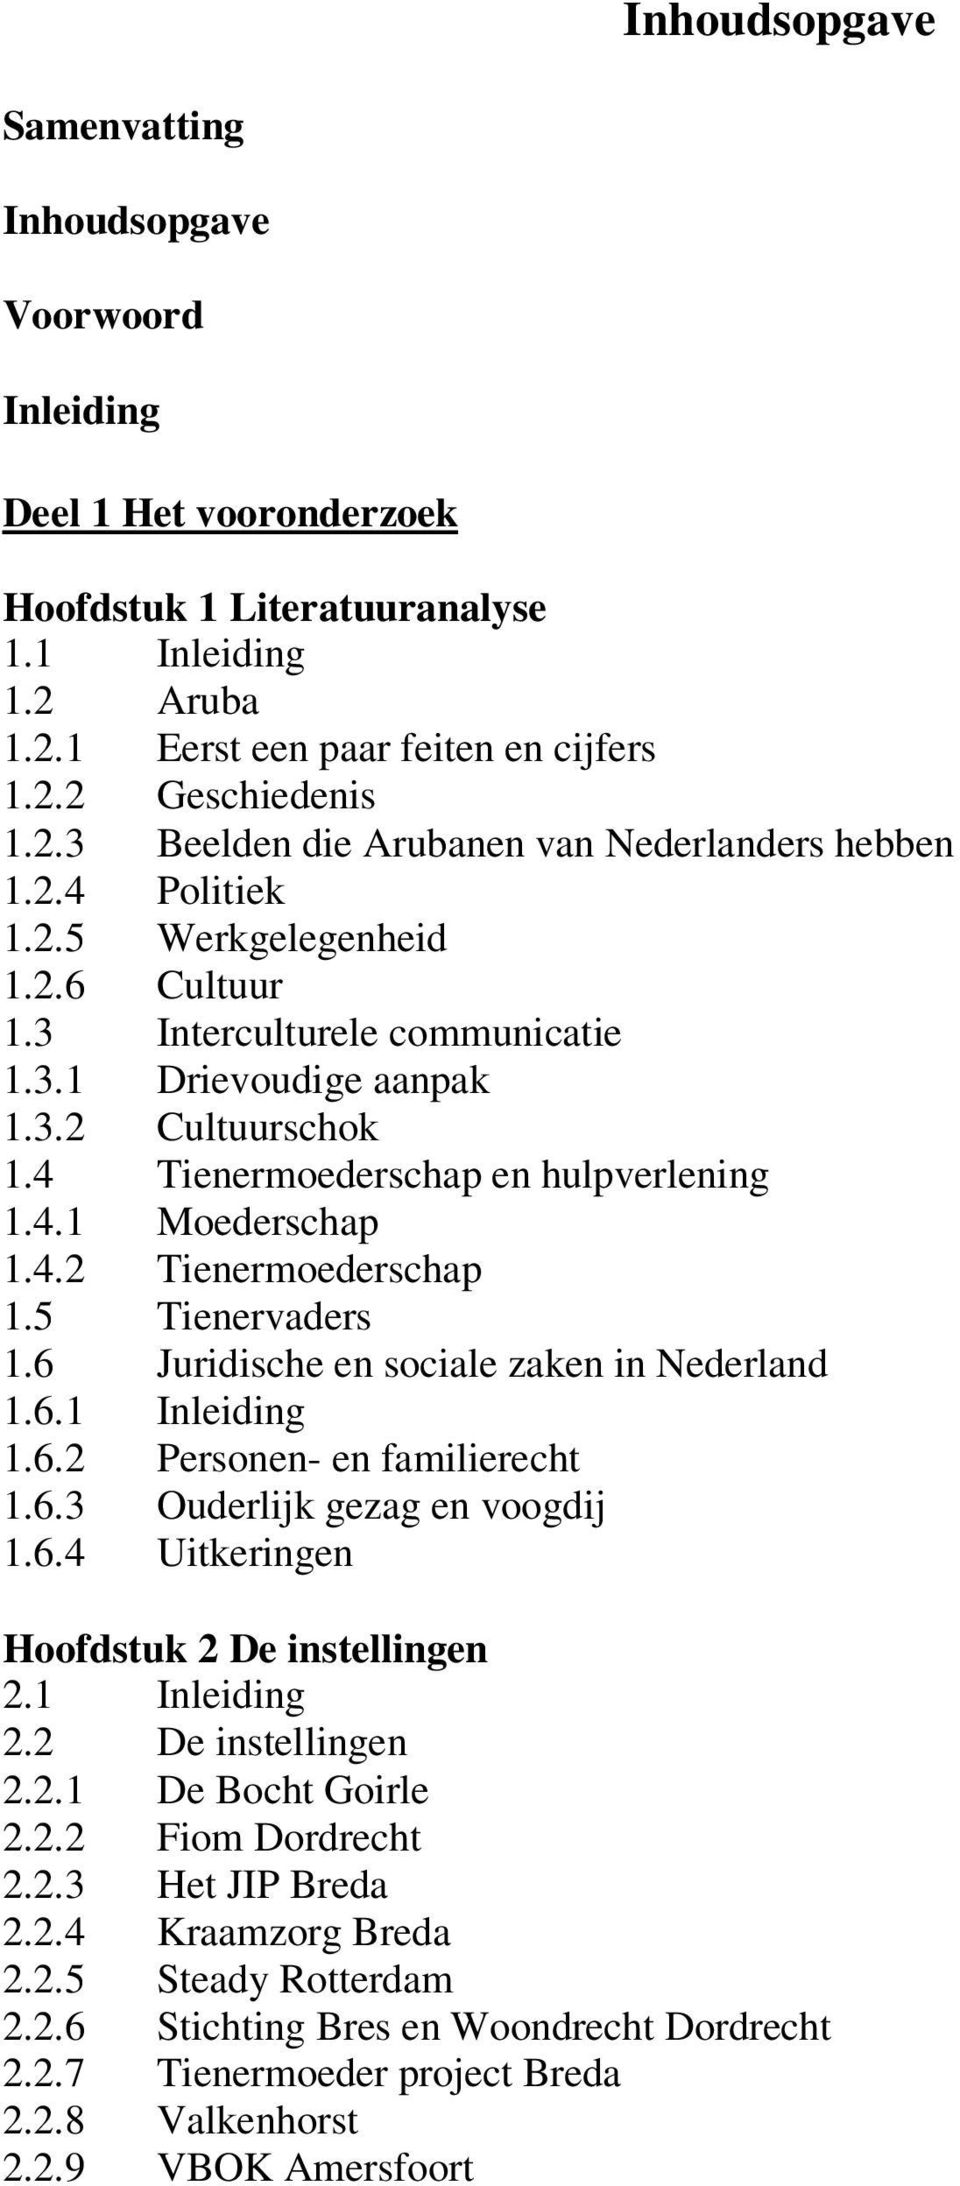 4 Tienermoederschap en hulpverlening 1.4.1 Moederschap 1.4.2 Tienermoederschap 1.5 Tienervaders 1.6 Juridische en sociale zaken in Nederland 1.6.1 Inleiding 1.6.2 Personen- en familierecht 1.6.3 Ouderlijk gezag en voogdij 1.